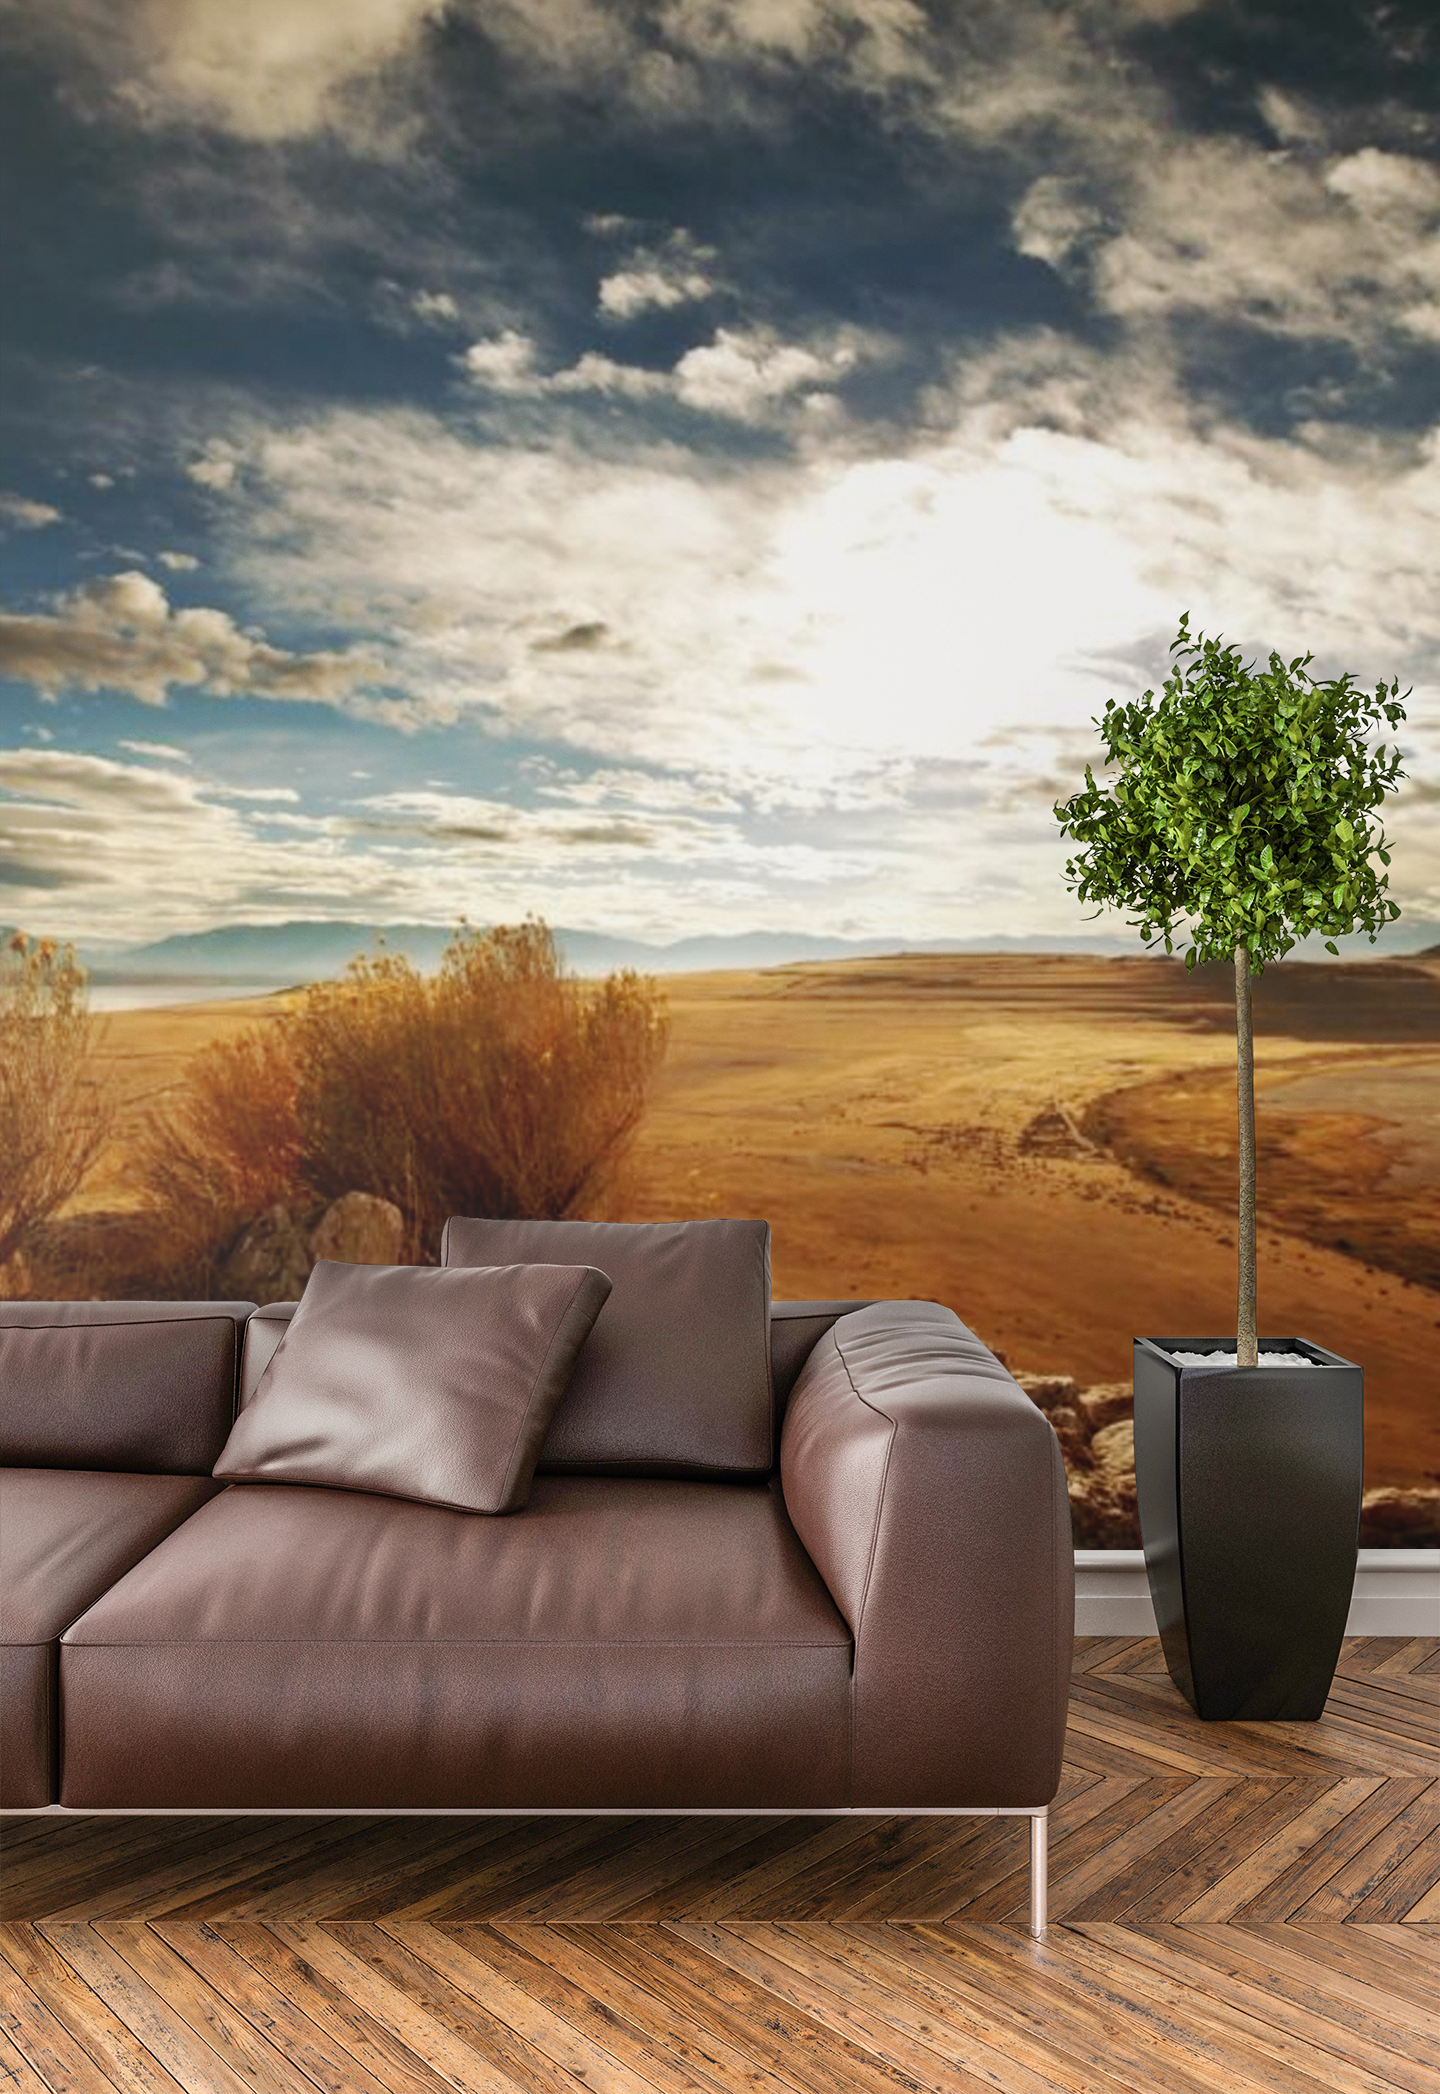 Desert Landscape - 0215 - Wall Murals Printing - wall art